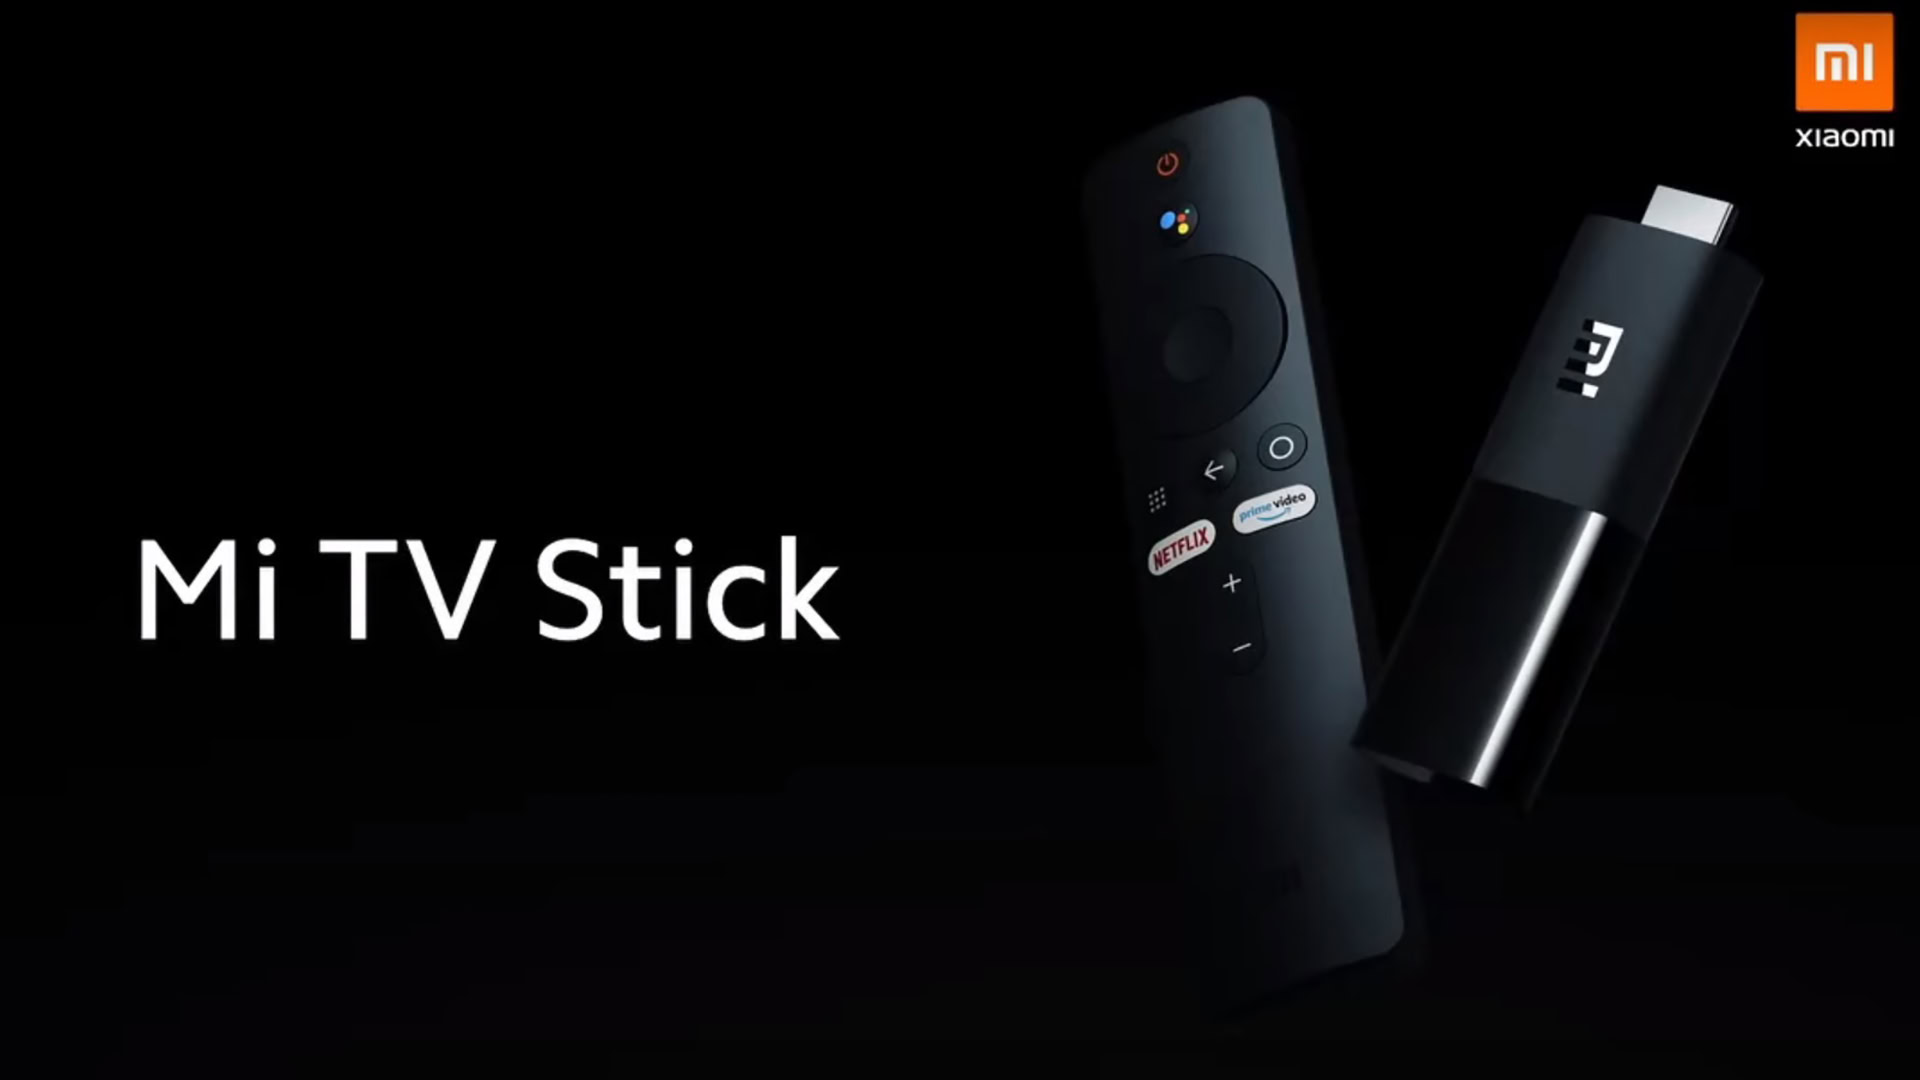 Xiaomi Mi TV Stick price and specs leak: A true Fire TV Stick competitor?